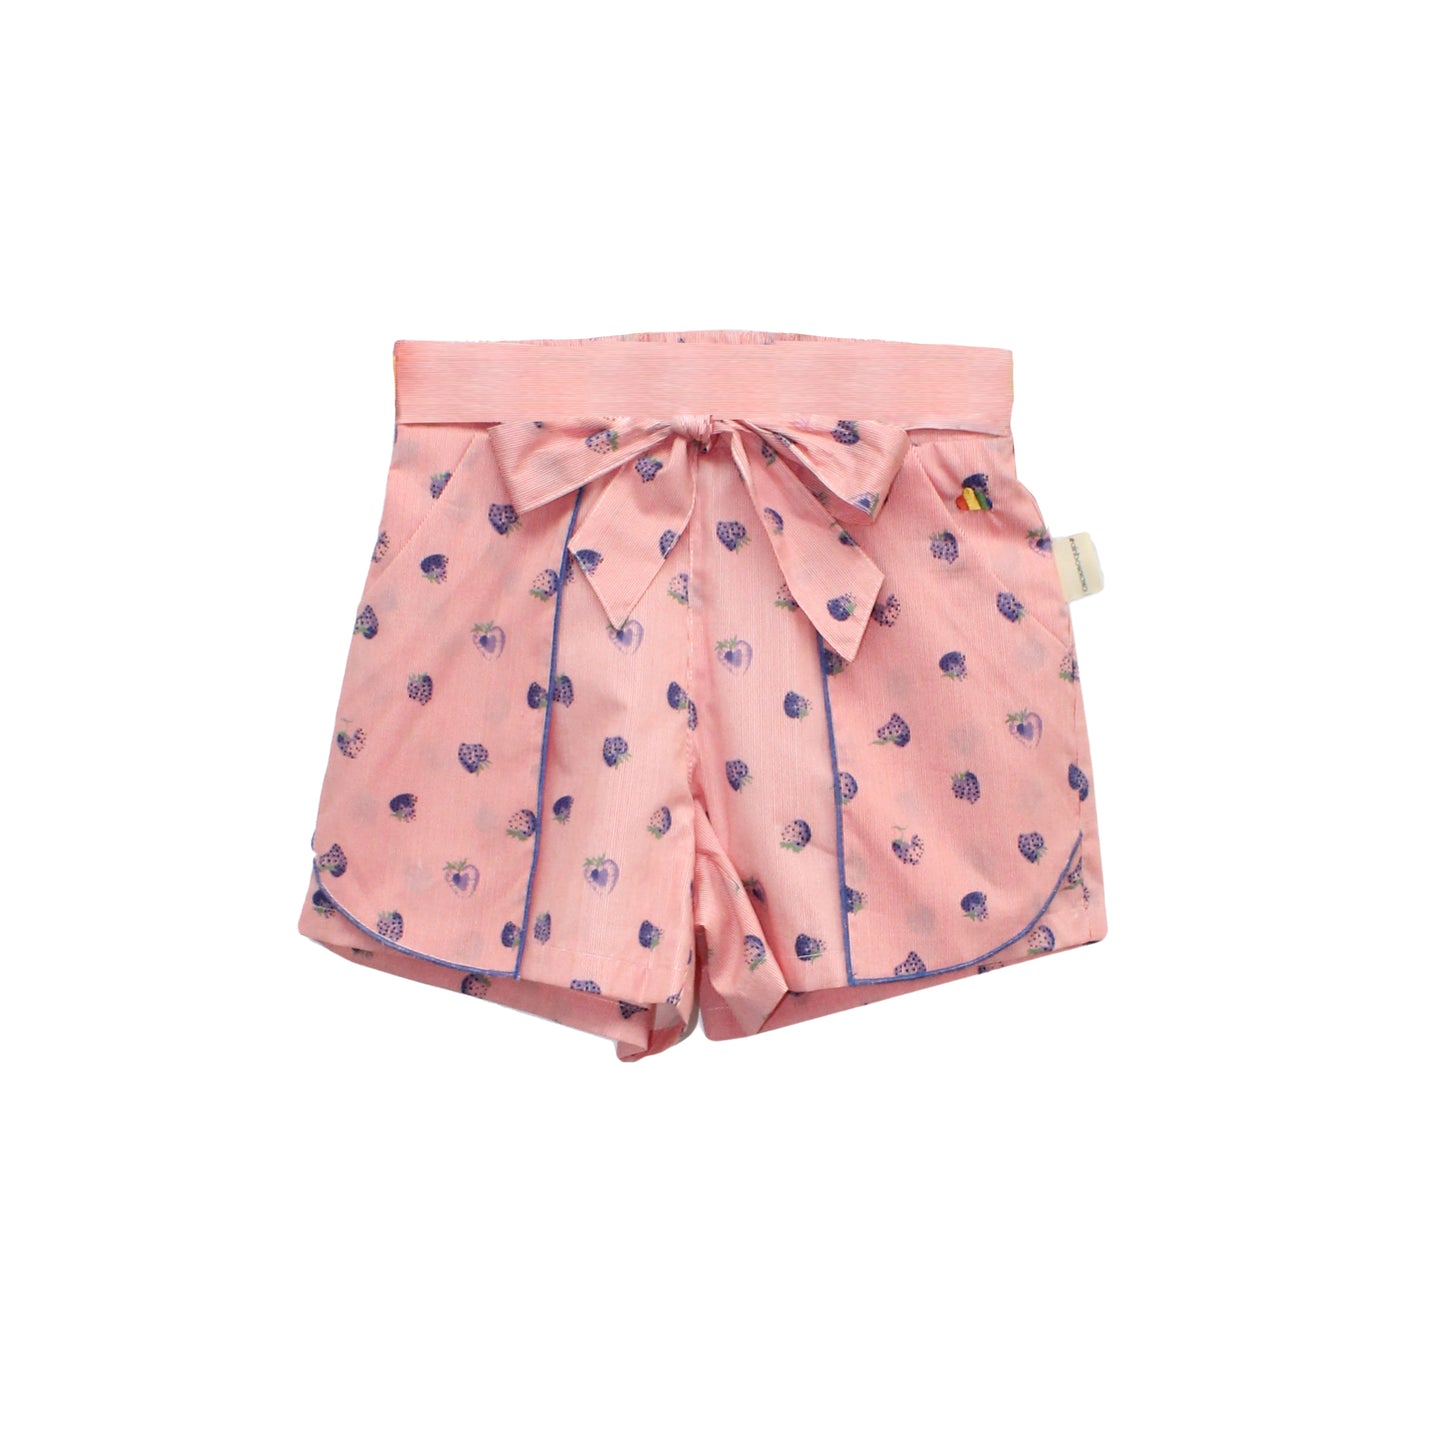 女童裝 - 粉紅色波點圖案短褲